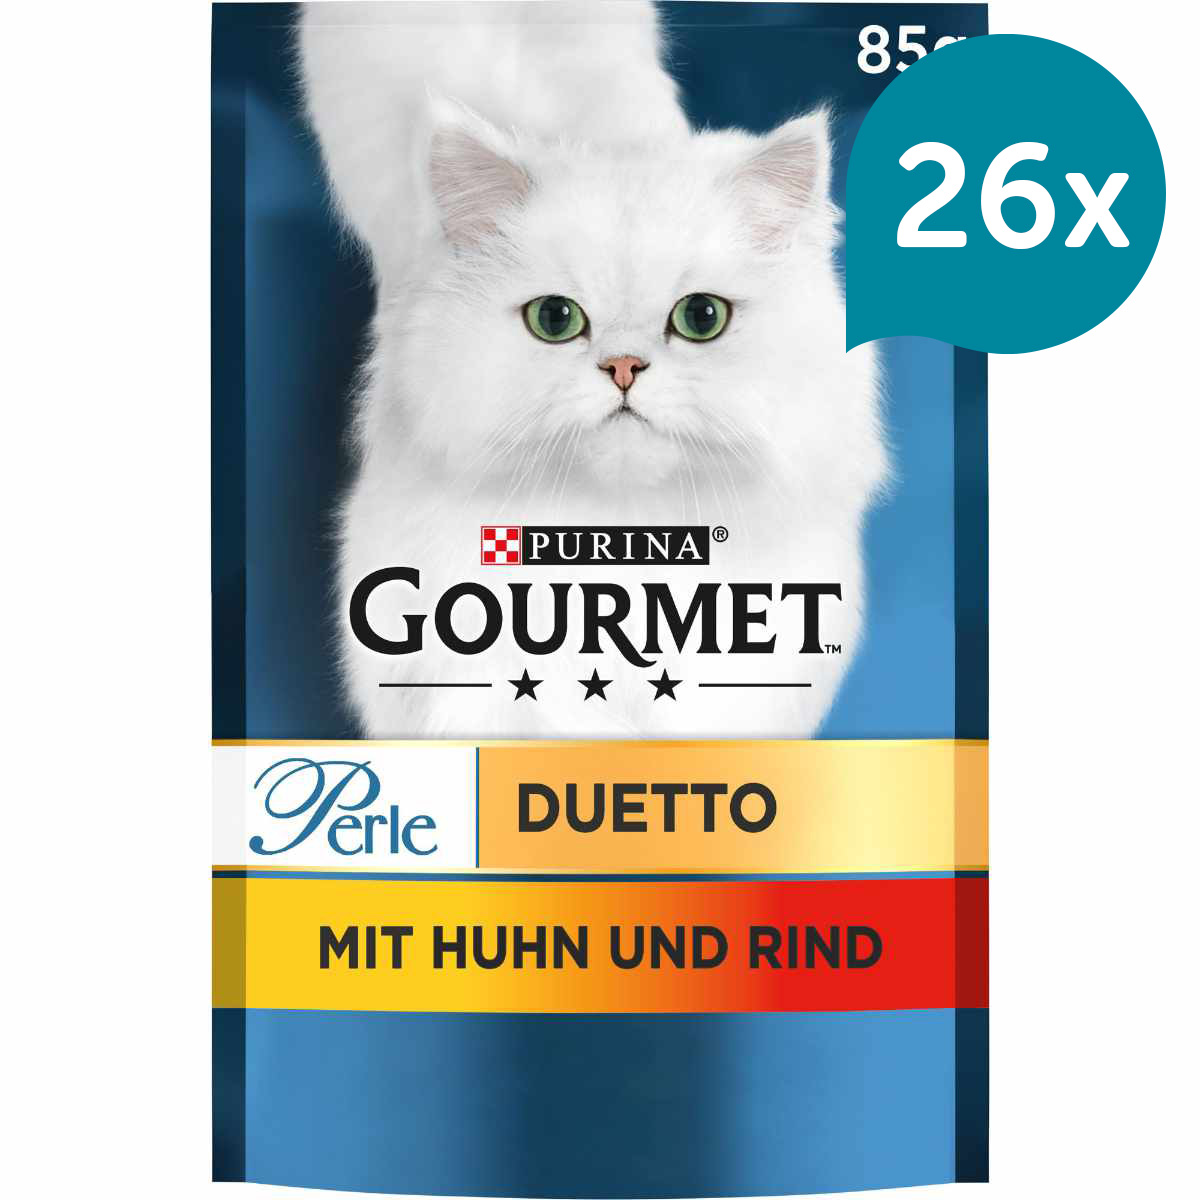 GOURMET Perle Duetto mit Huhn und Rind 26x85g von Gourmet